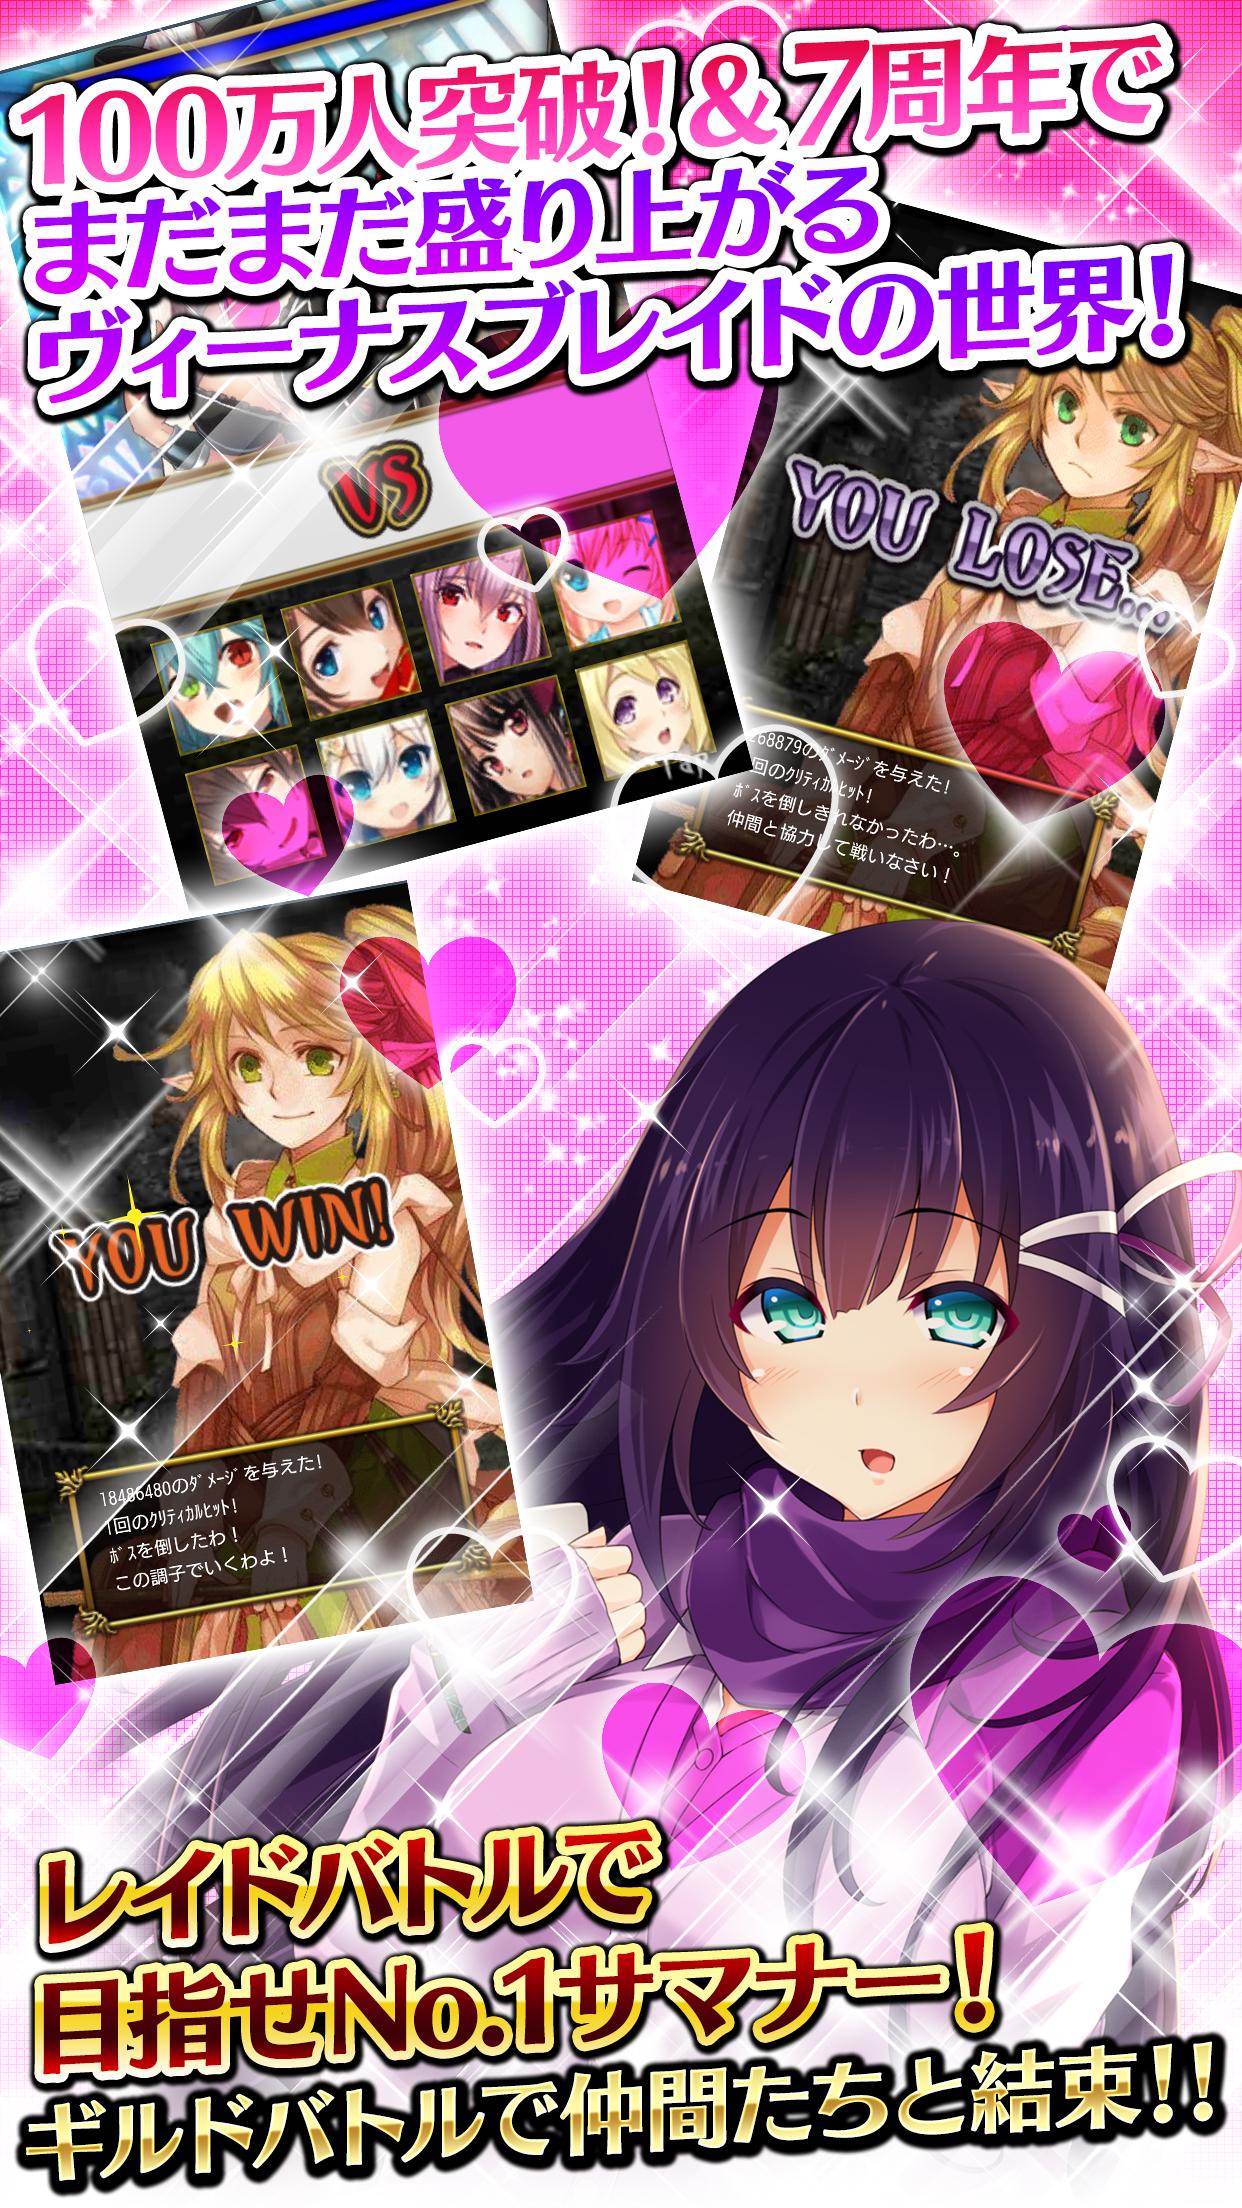 Android application ヴィーナス†ブレイド【RPG/カードゲーム/武器娘/美少女】 screenshort